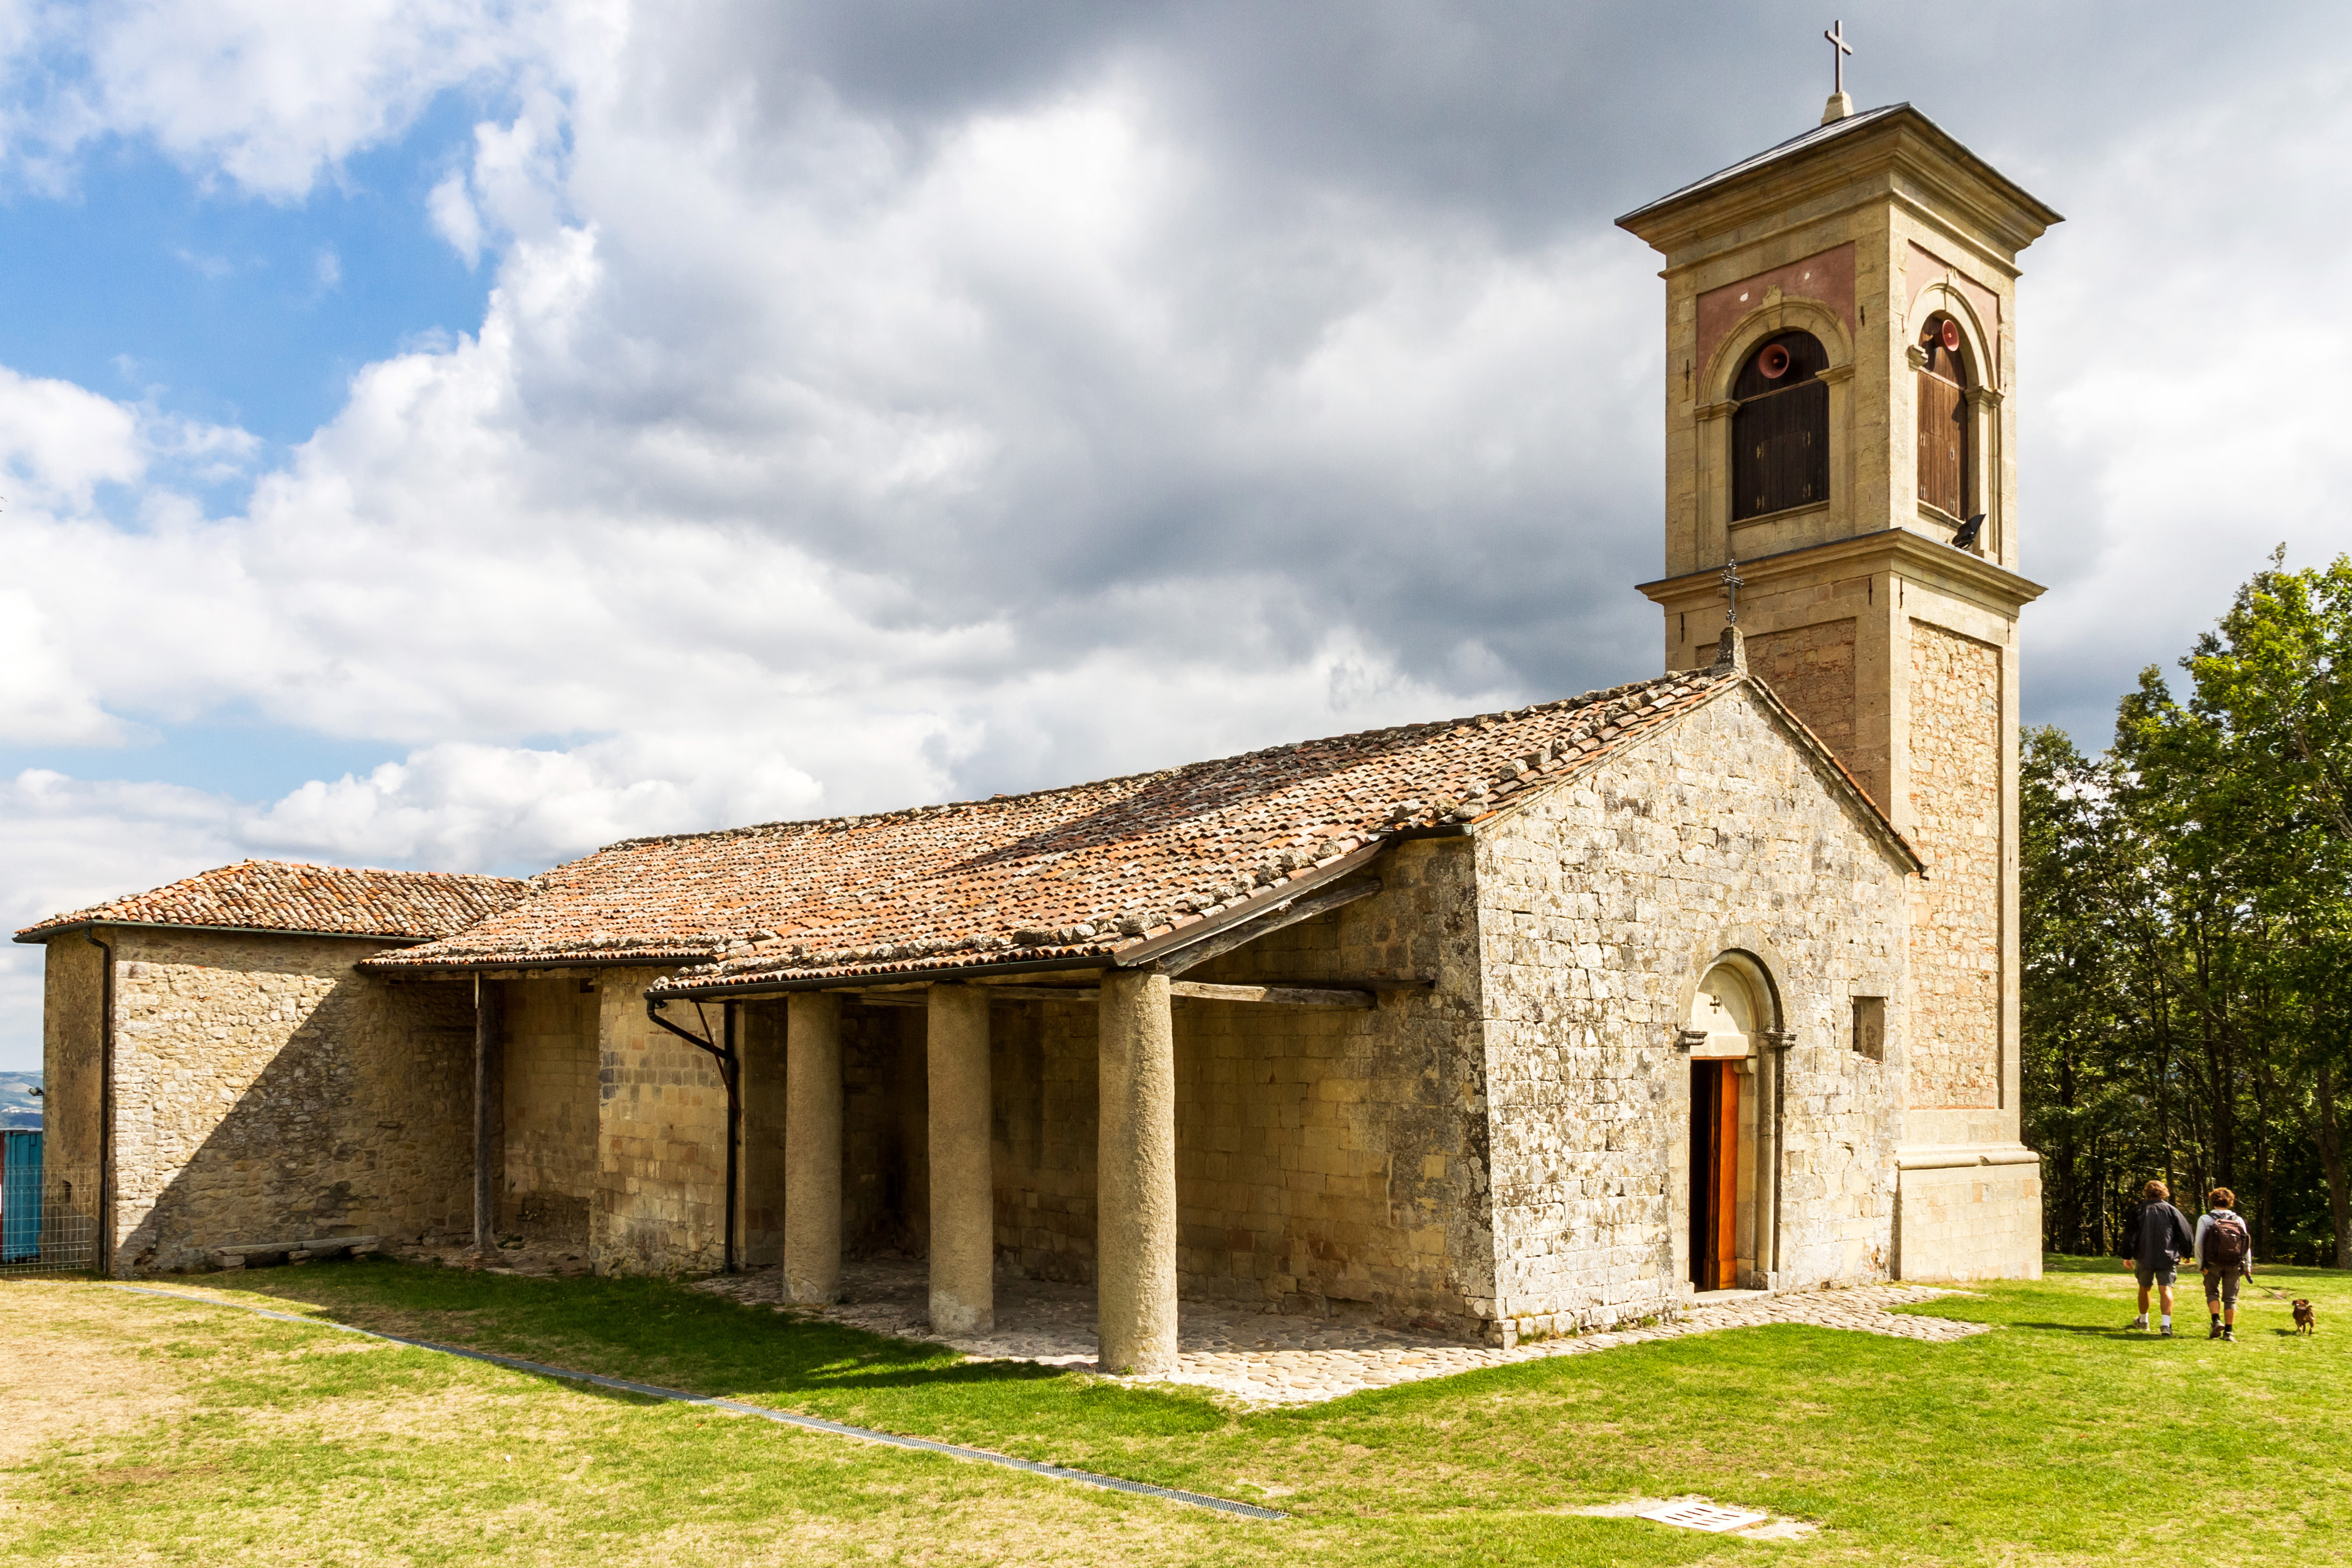 foto: https://upload.wikimedia.org/wikipedia/commons/6/61/Parco_di_Montovolo._Santuario_della_Beata_Vergine_della_Consolazione.jpg